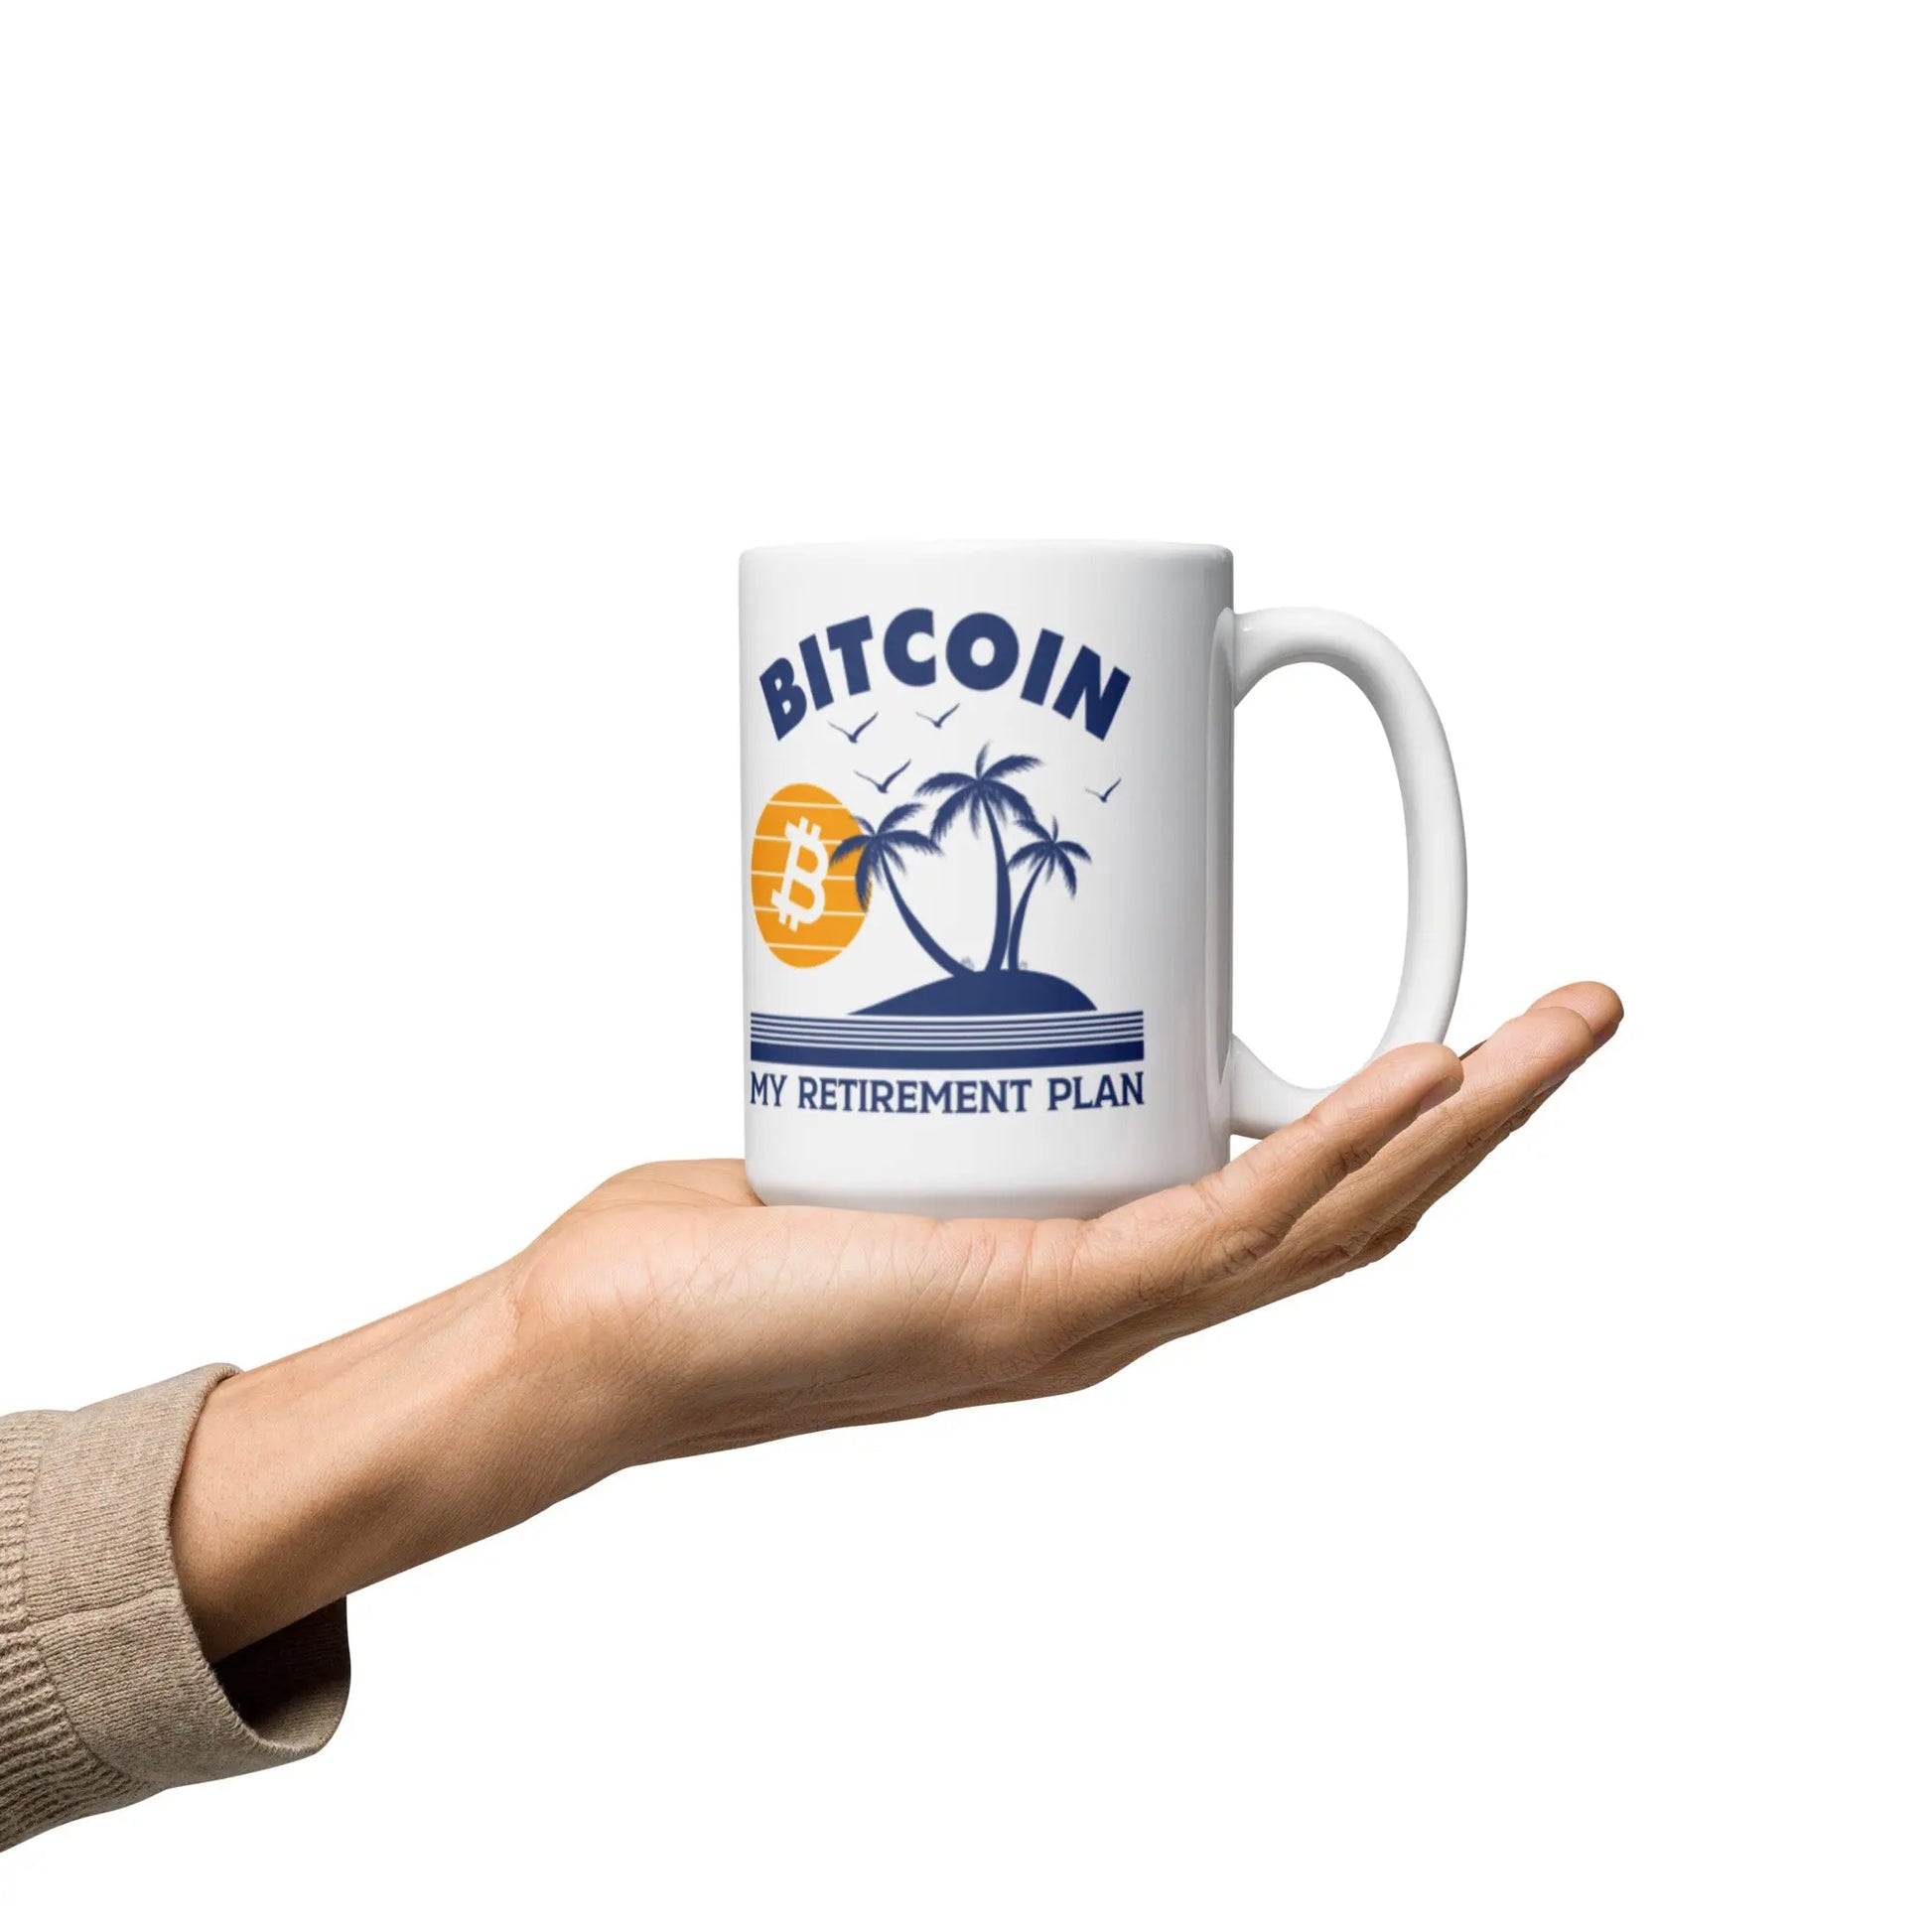 My Retirement Plan - White Glossy Bitcoin Mug